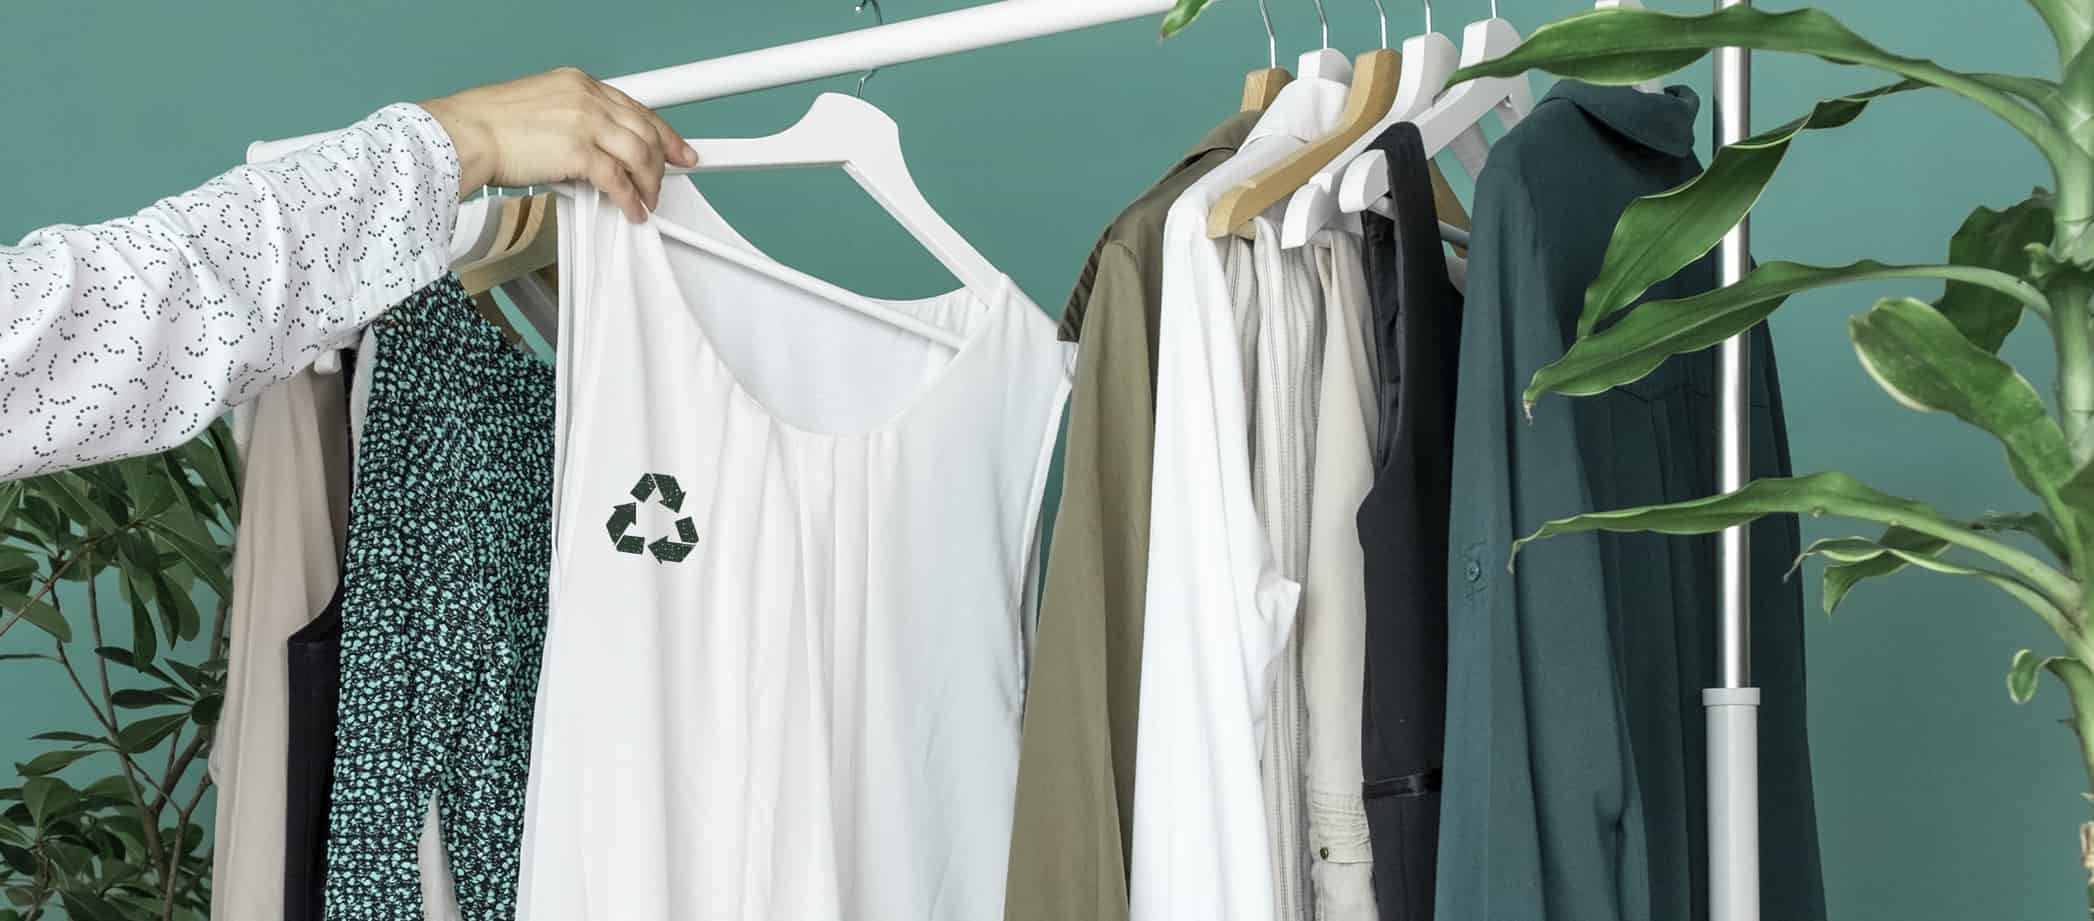 لباس های بازیافتی - مد پایدار